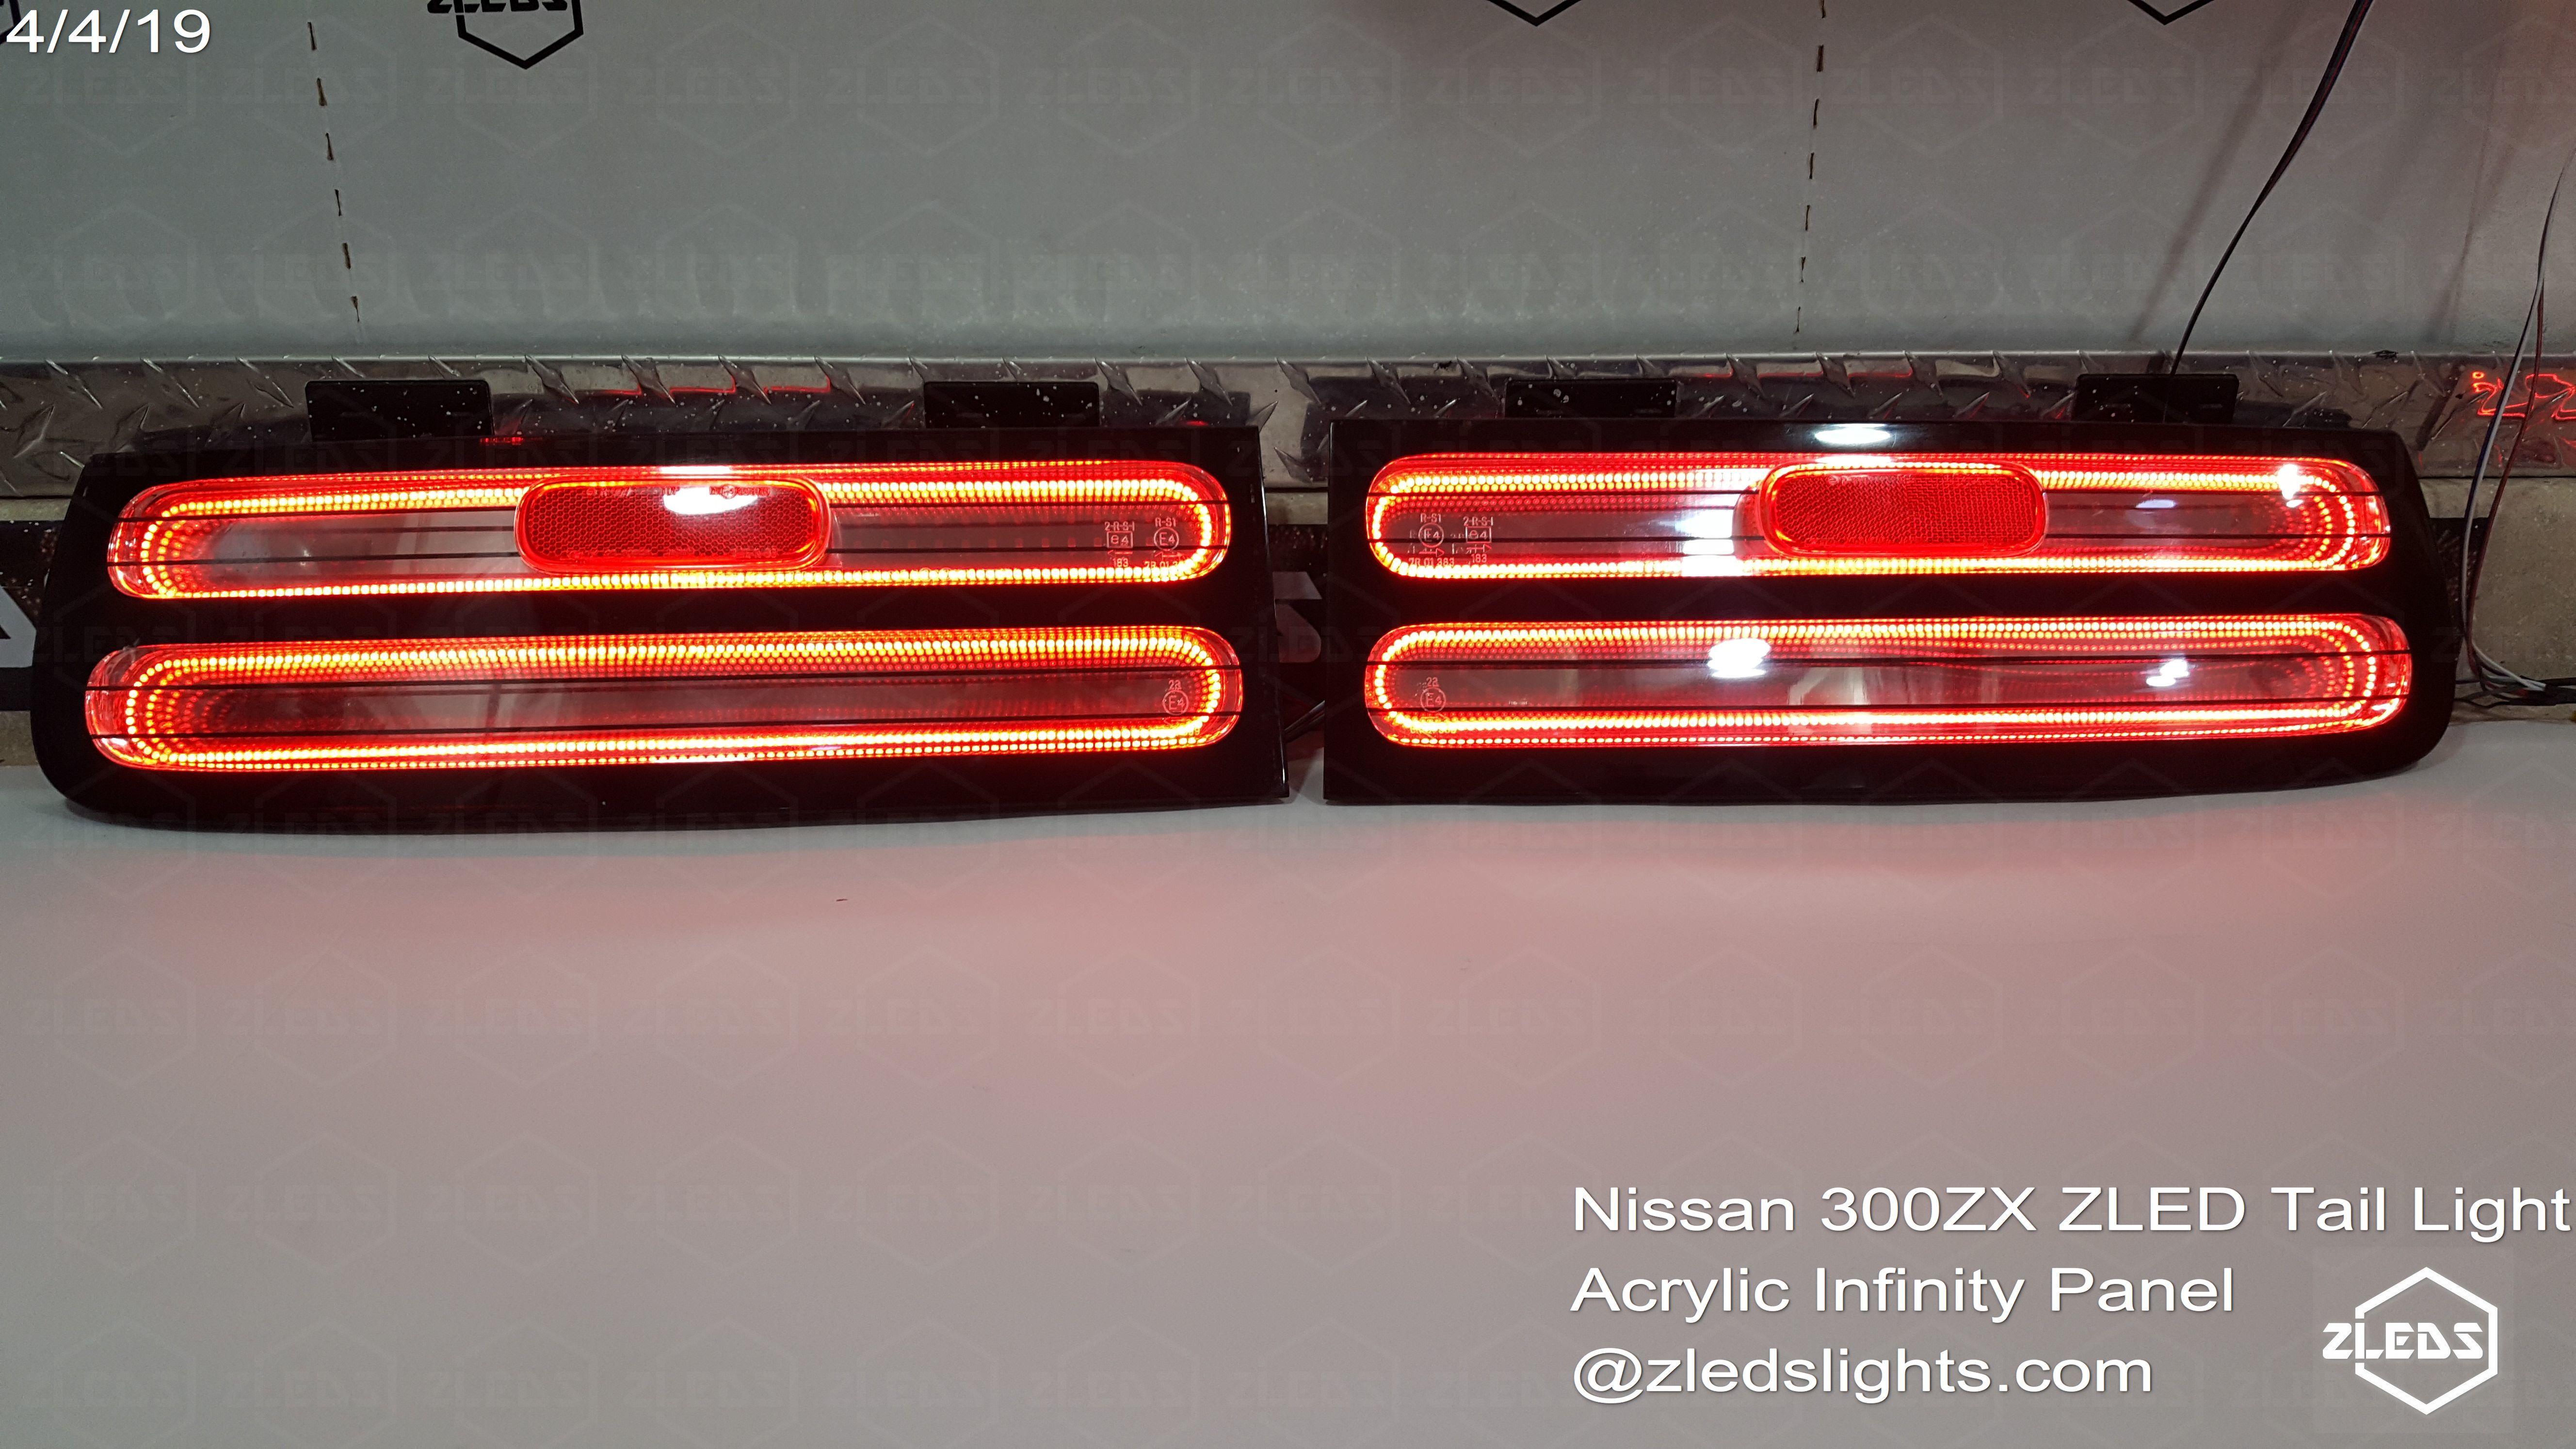 Nissan Z32 300zx Zled Tail Light.